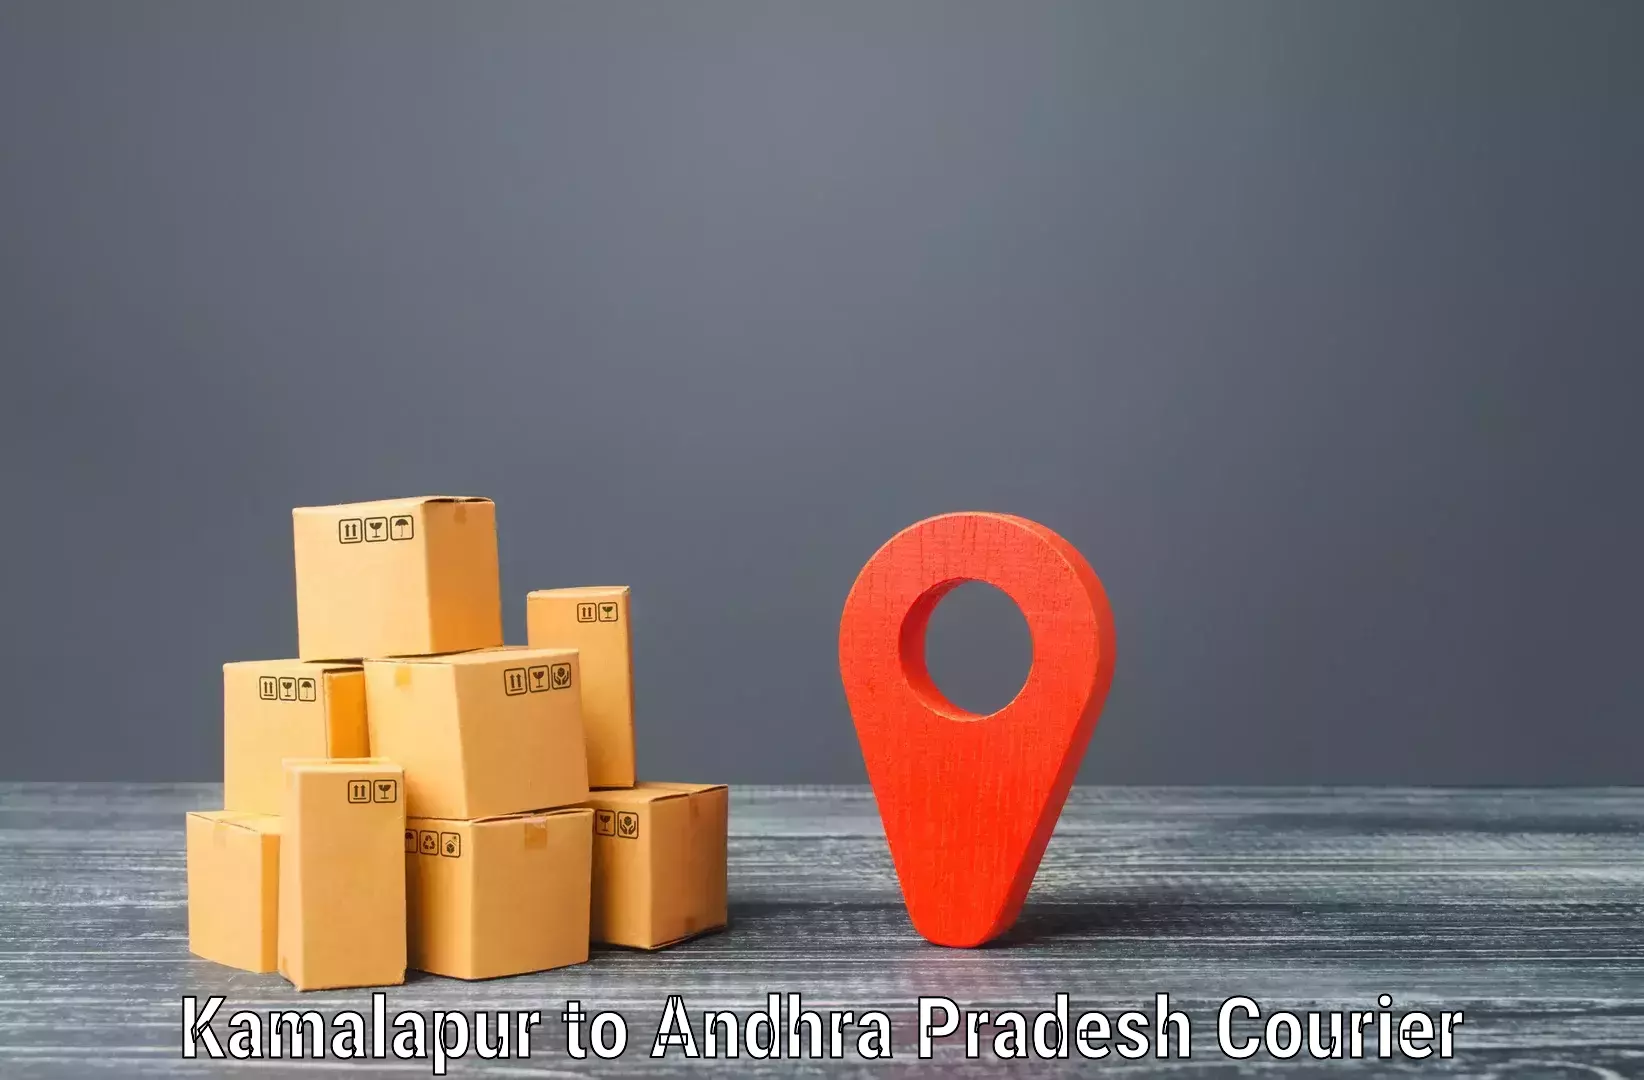 Express logistics providers Kamalapur to Jinnuru